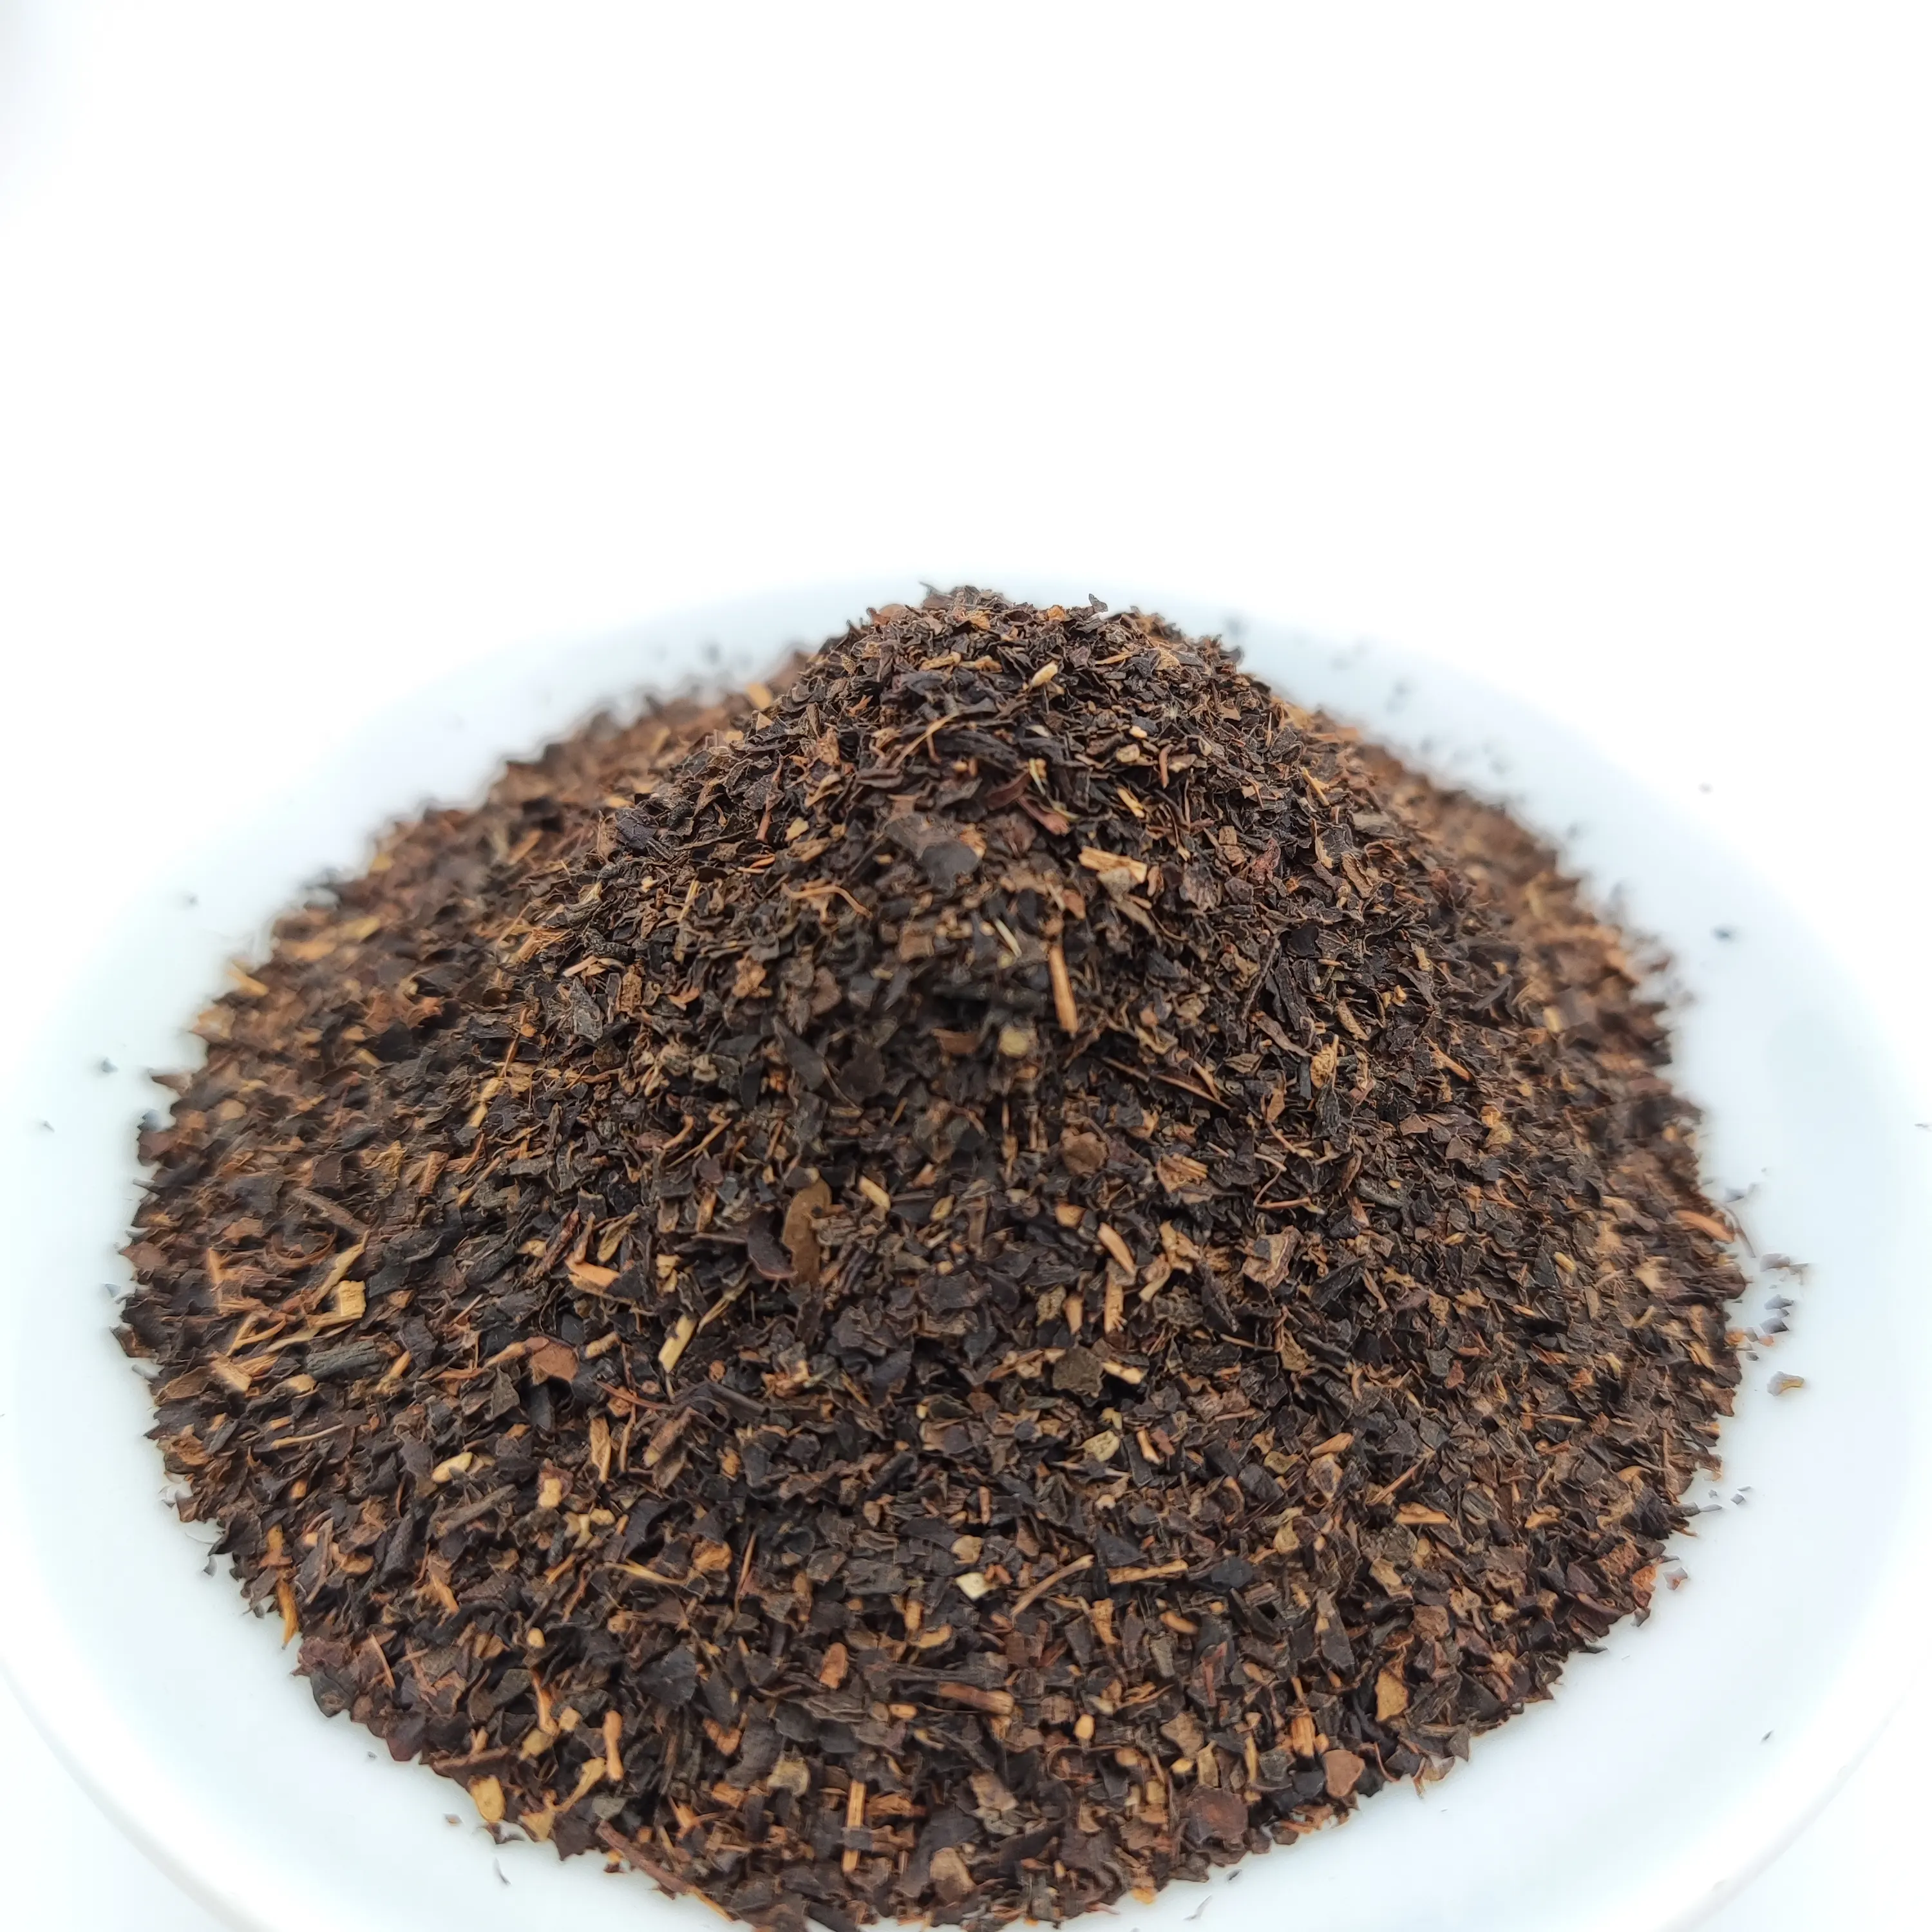 אריזה מותאמת אישית מחיר זול יצרני תה באיכות גבוהה סיטונאי בתפזורת תה שחור אורגני למכירה